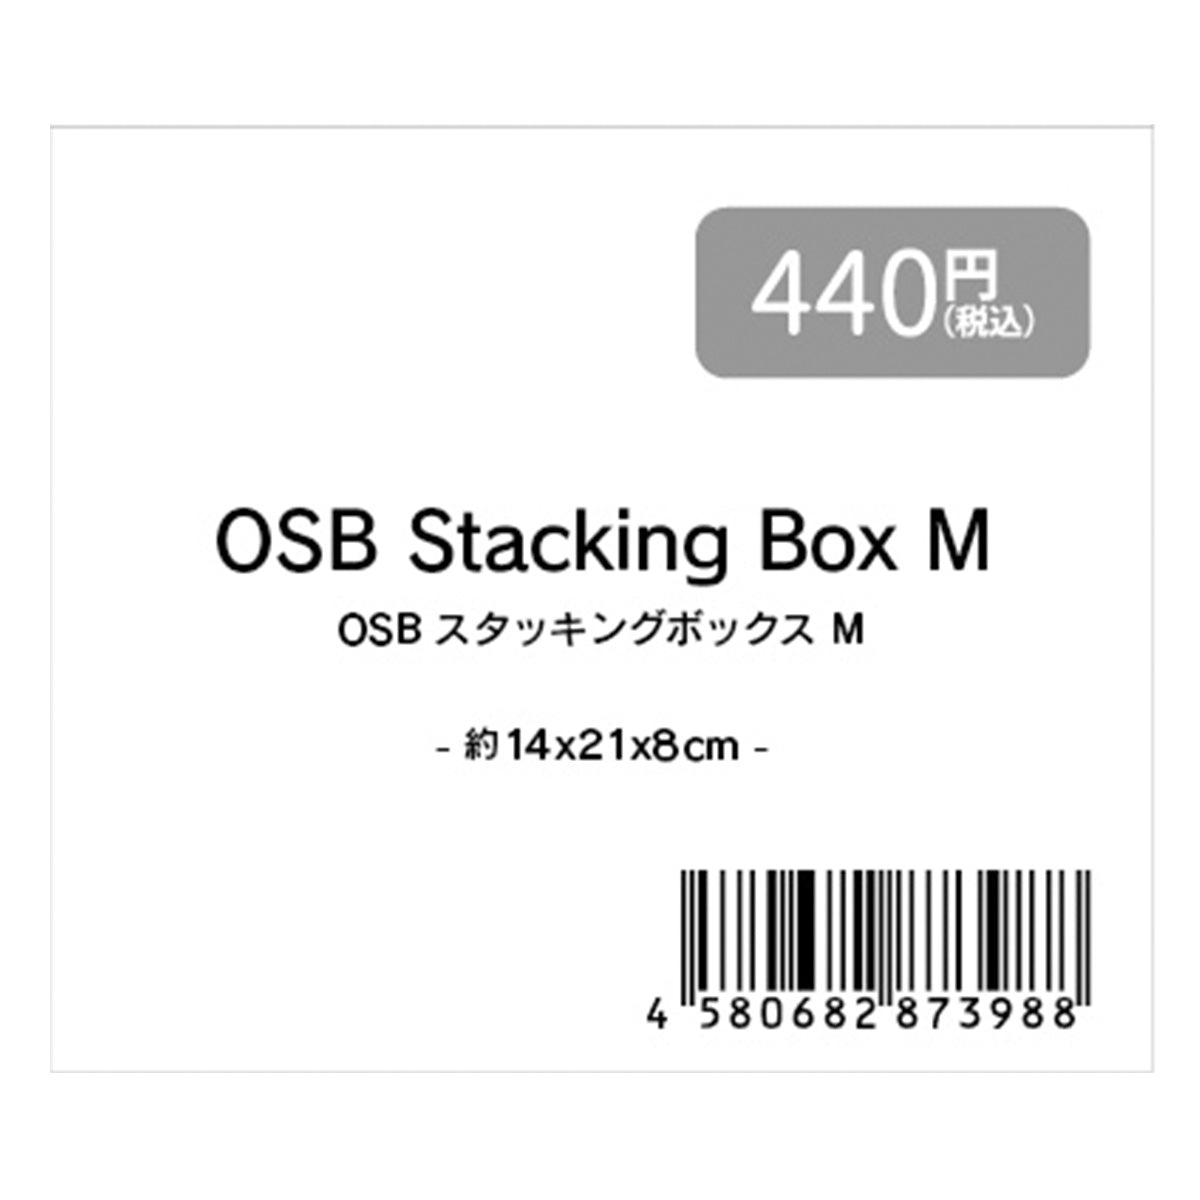 収納ボックス 小物ケース ナチュラル OSBスタッキングボックス M 14x21x8cm 1523/353367